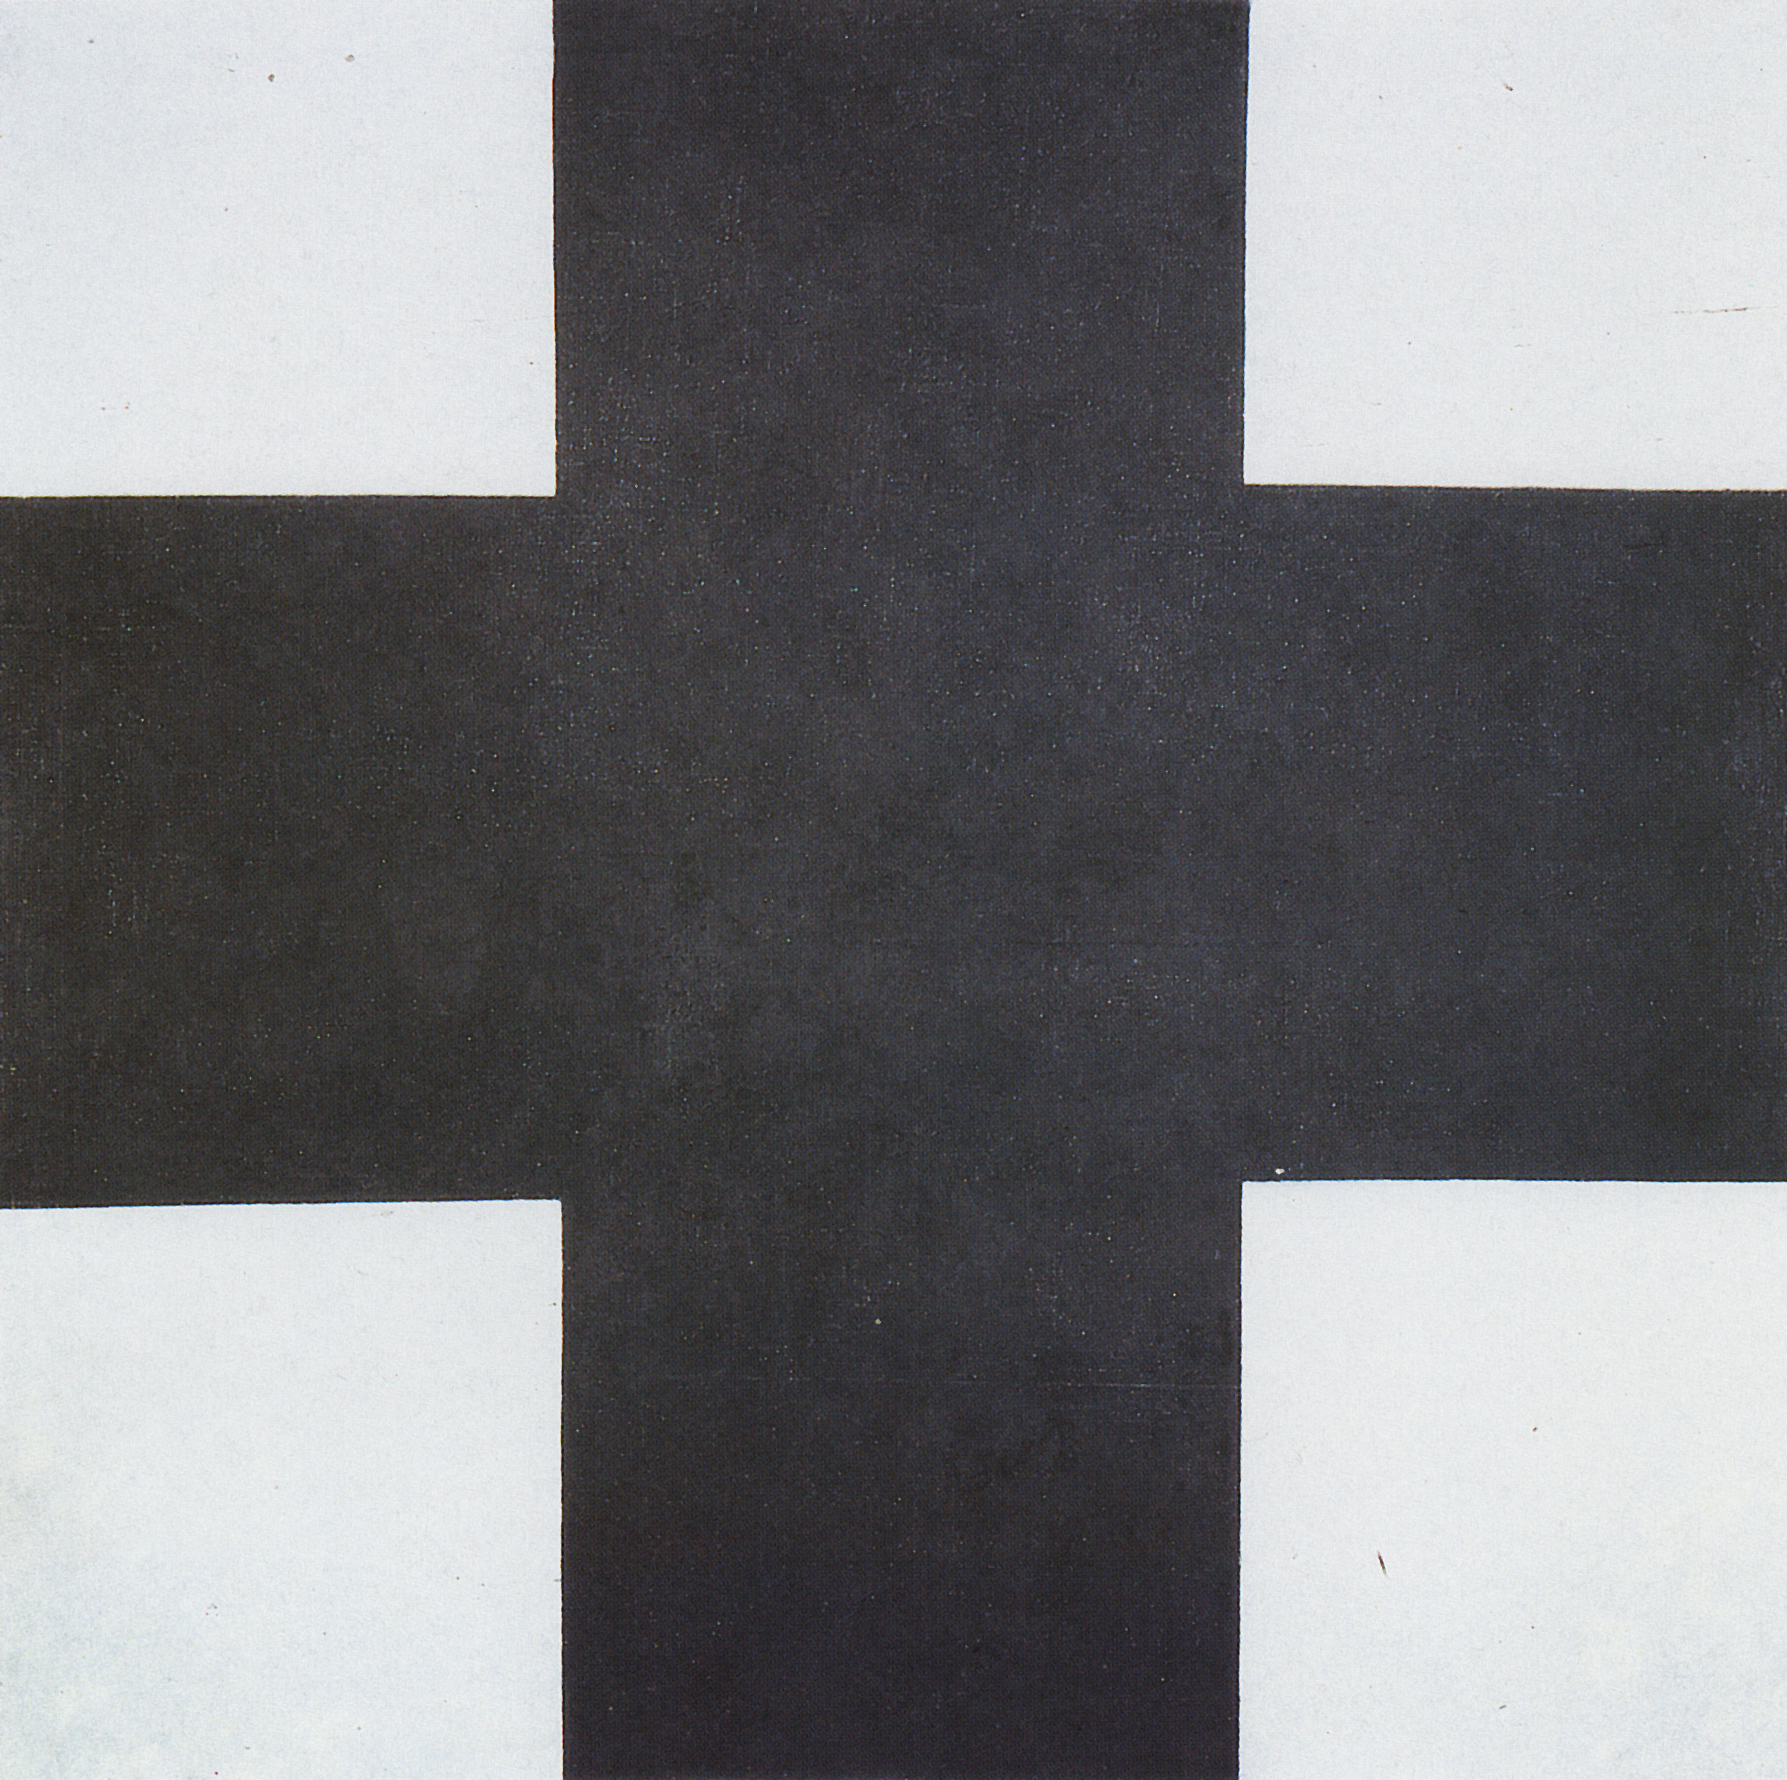 Малевич. Черный крест. Около 1923